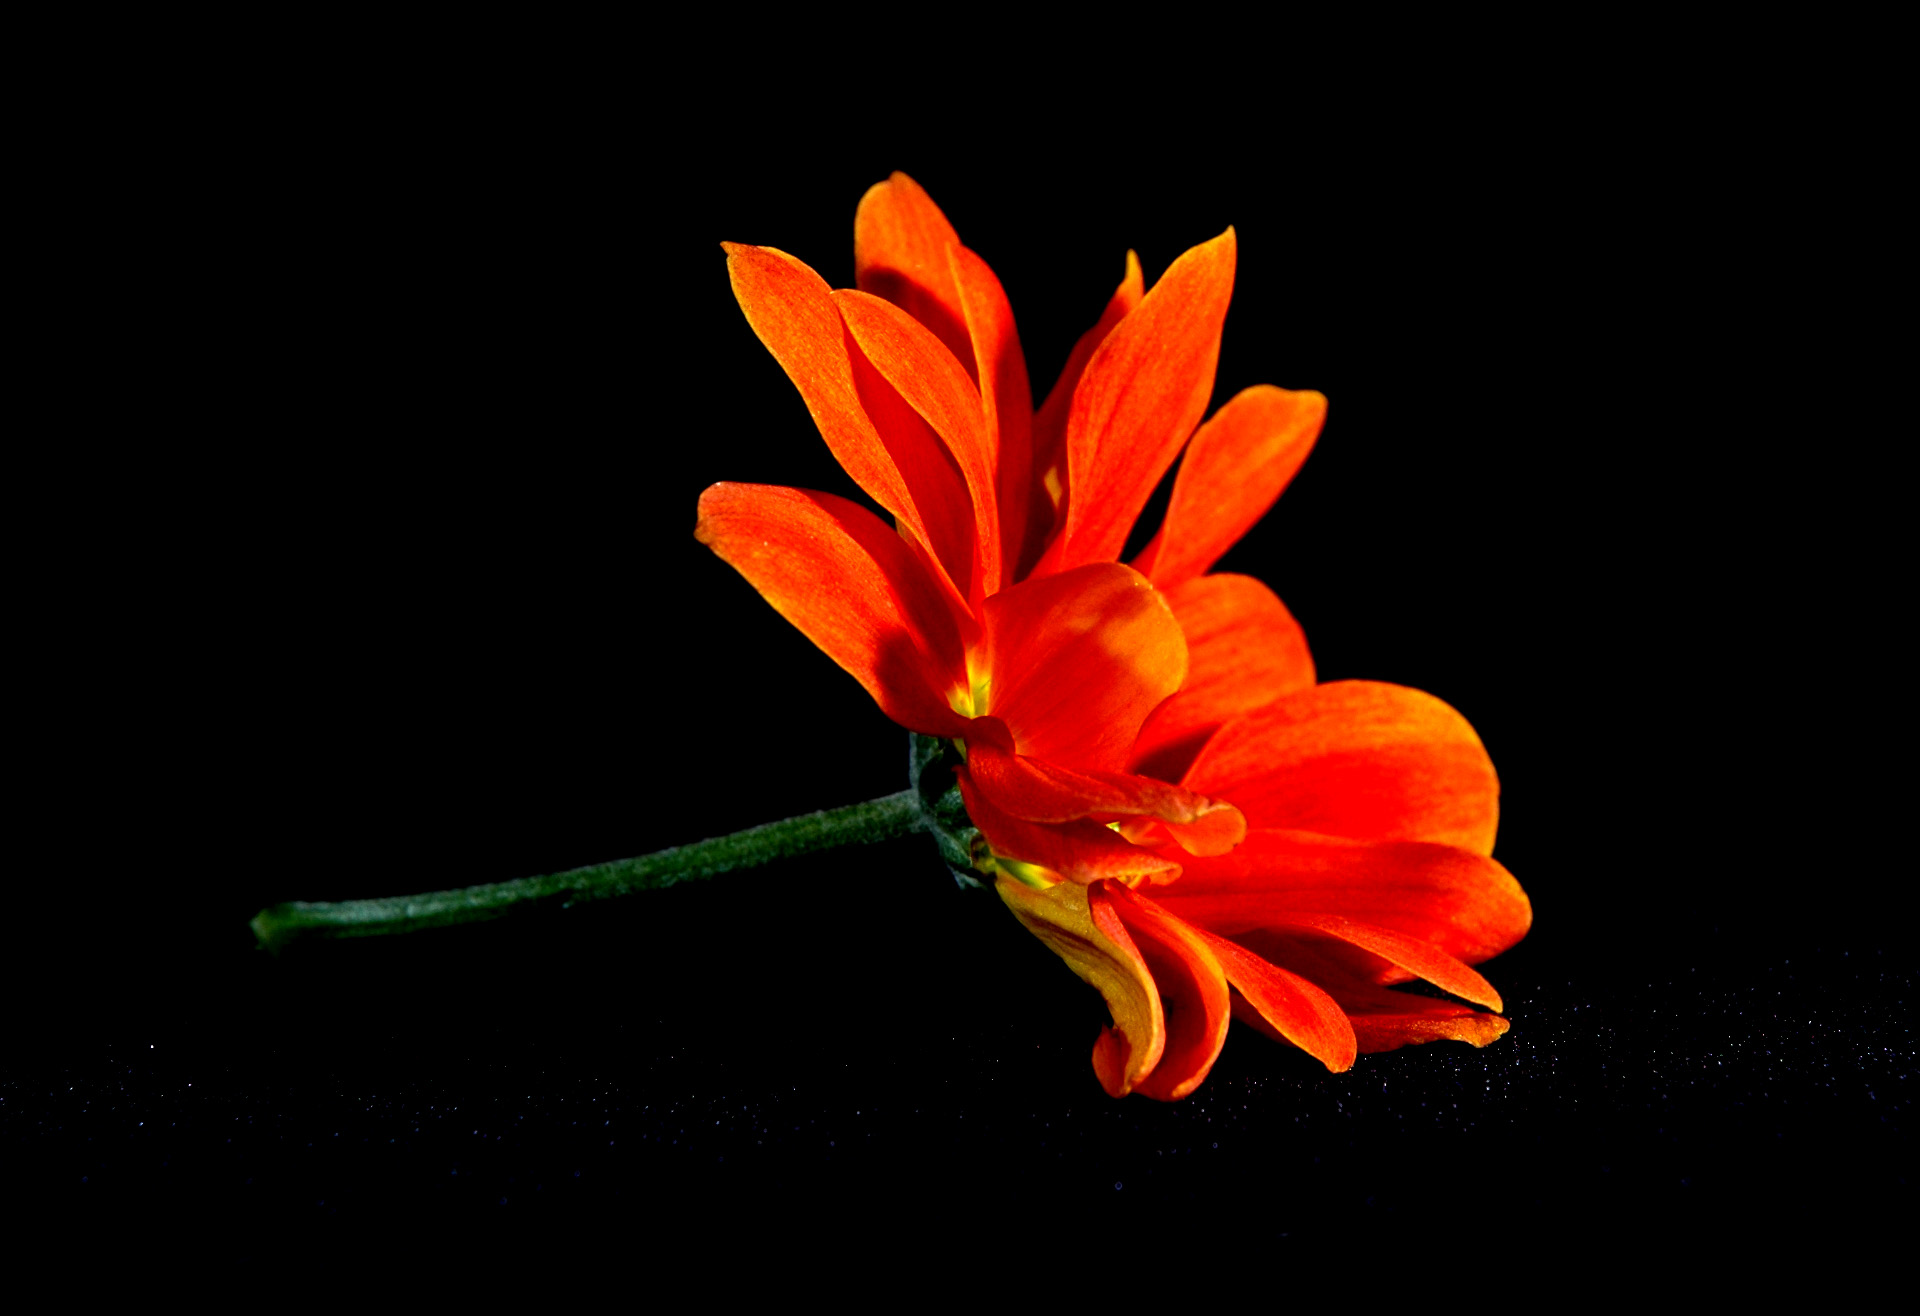 Best Mobile Orange Flower Backgrounds